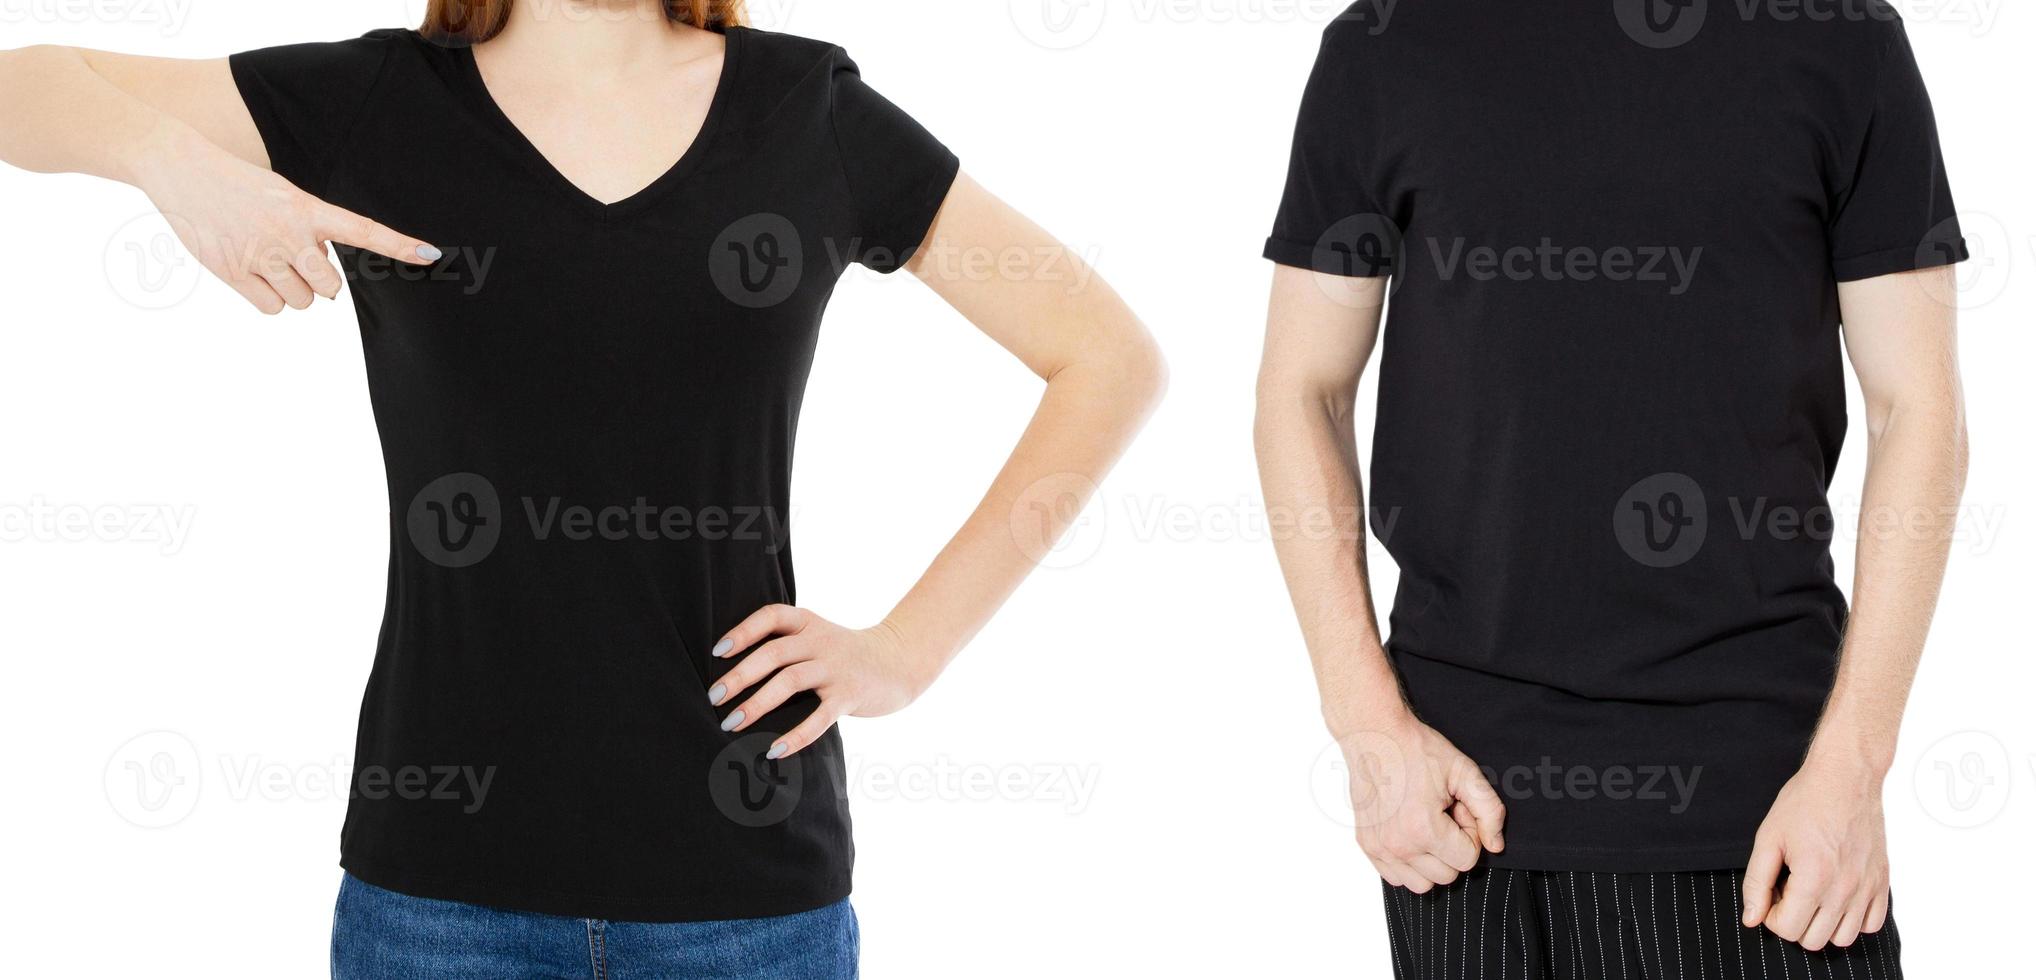 svart t-shirt närbild mock up bakgrund - framifrån av kille och tjej i tom svart pikétröja foto